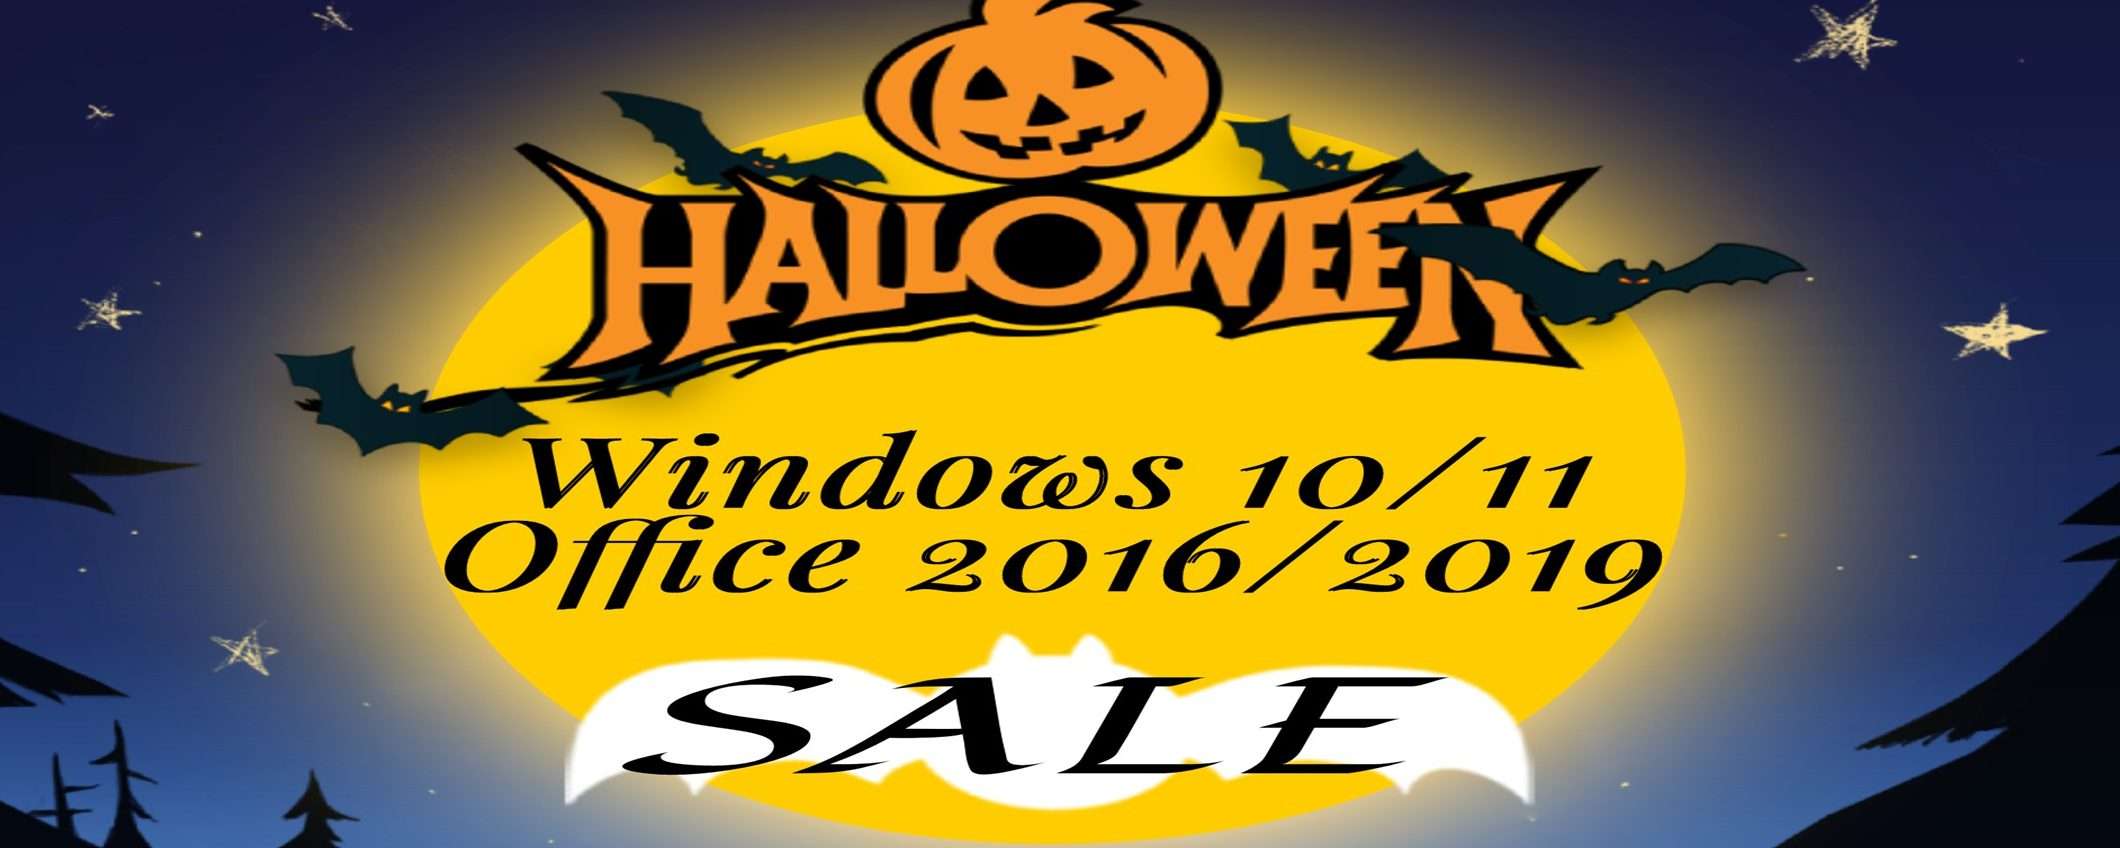 Licenza genuina Windows 10 a soli 12€ e Windows 11 a 19€ solo per Halloween